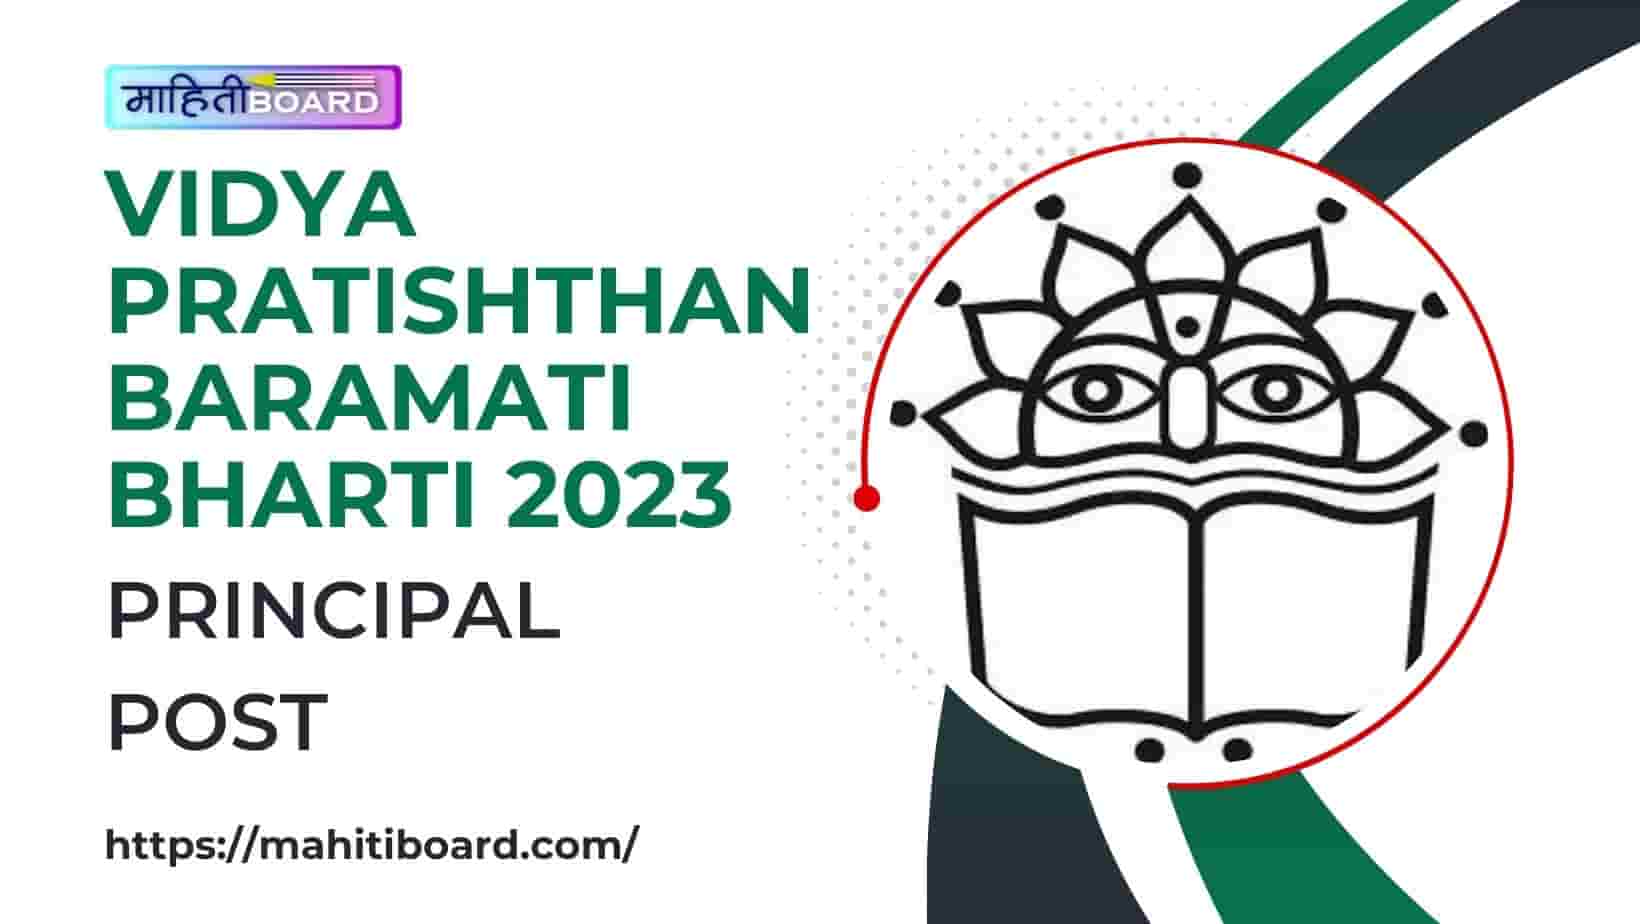 Vidya Pratishthan Baramati Bharti 2023